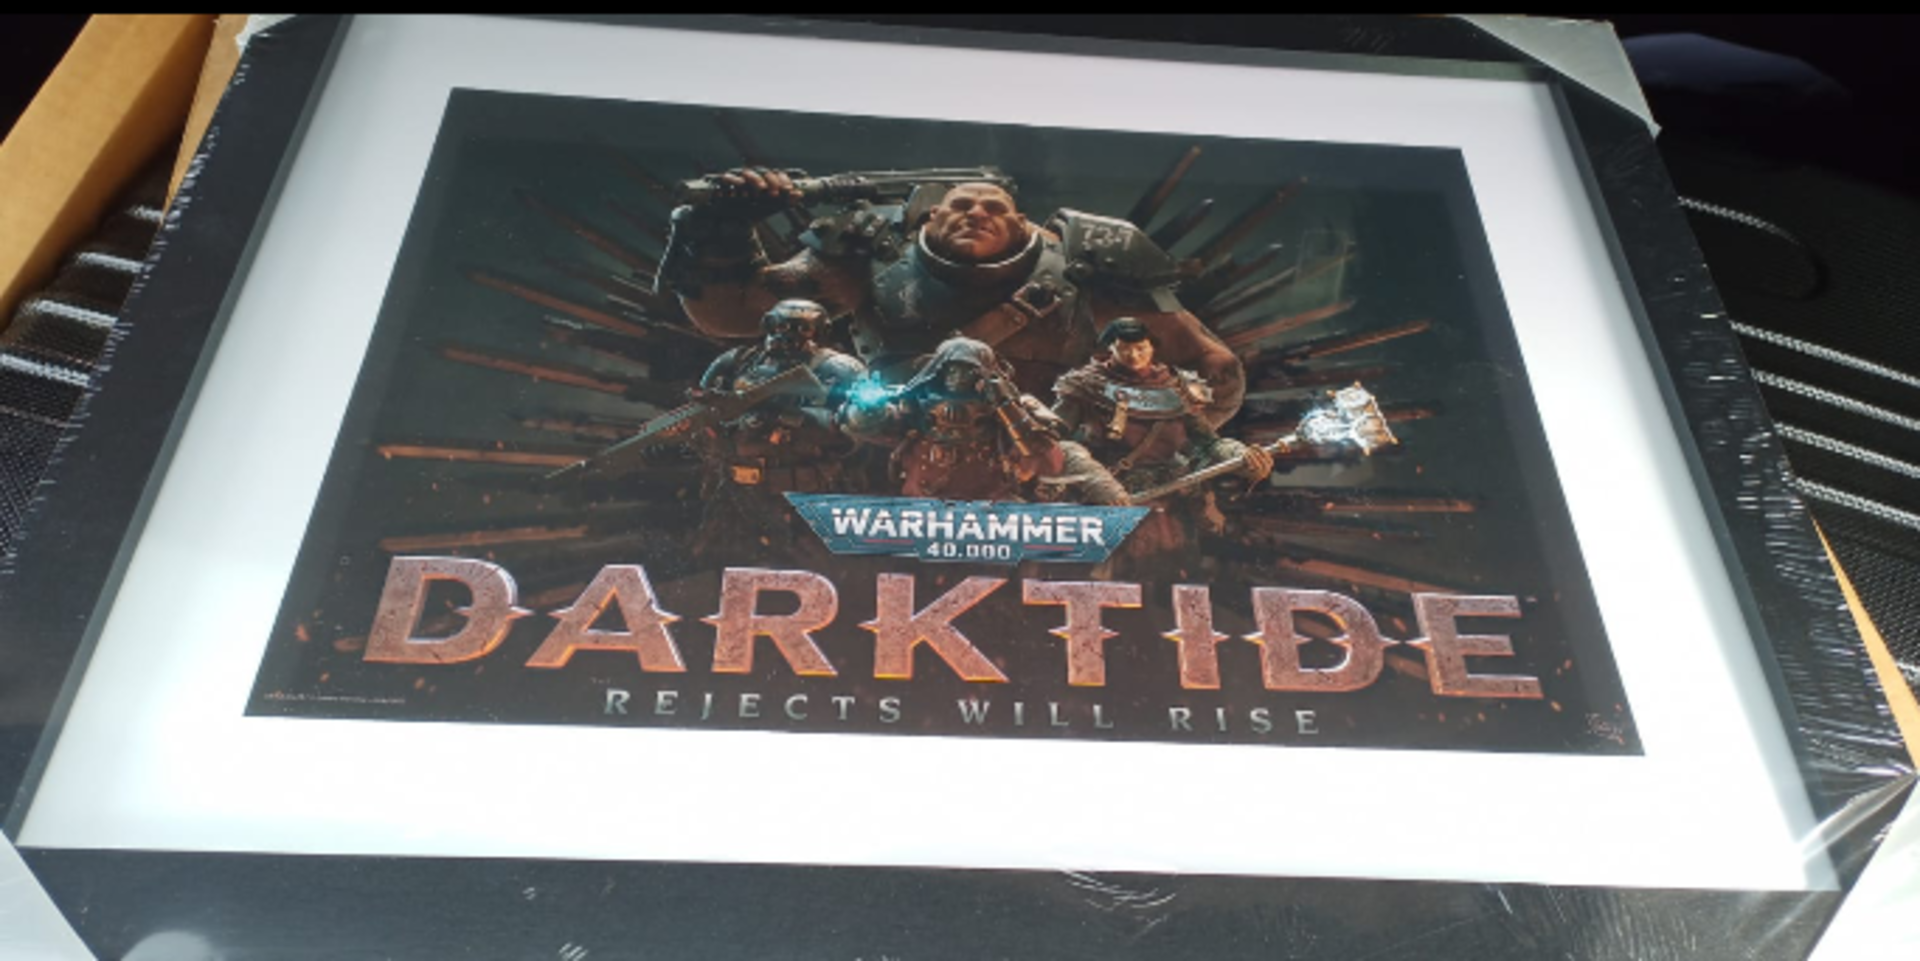 100 x Warhammer 40000 Darktide Framed Picture | Total RRP £2,500 - Image 2 of 2